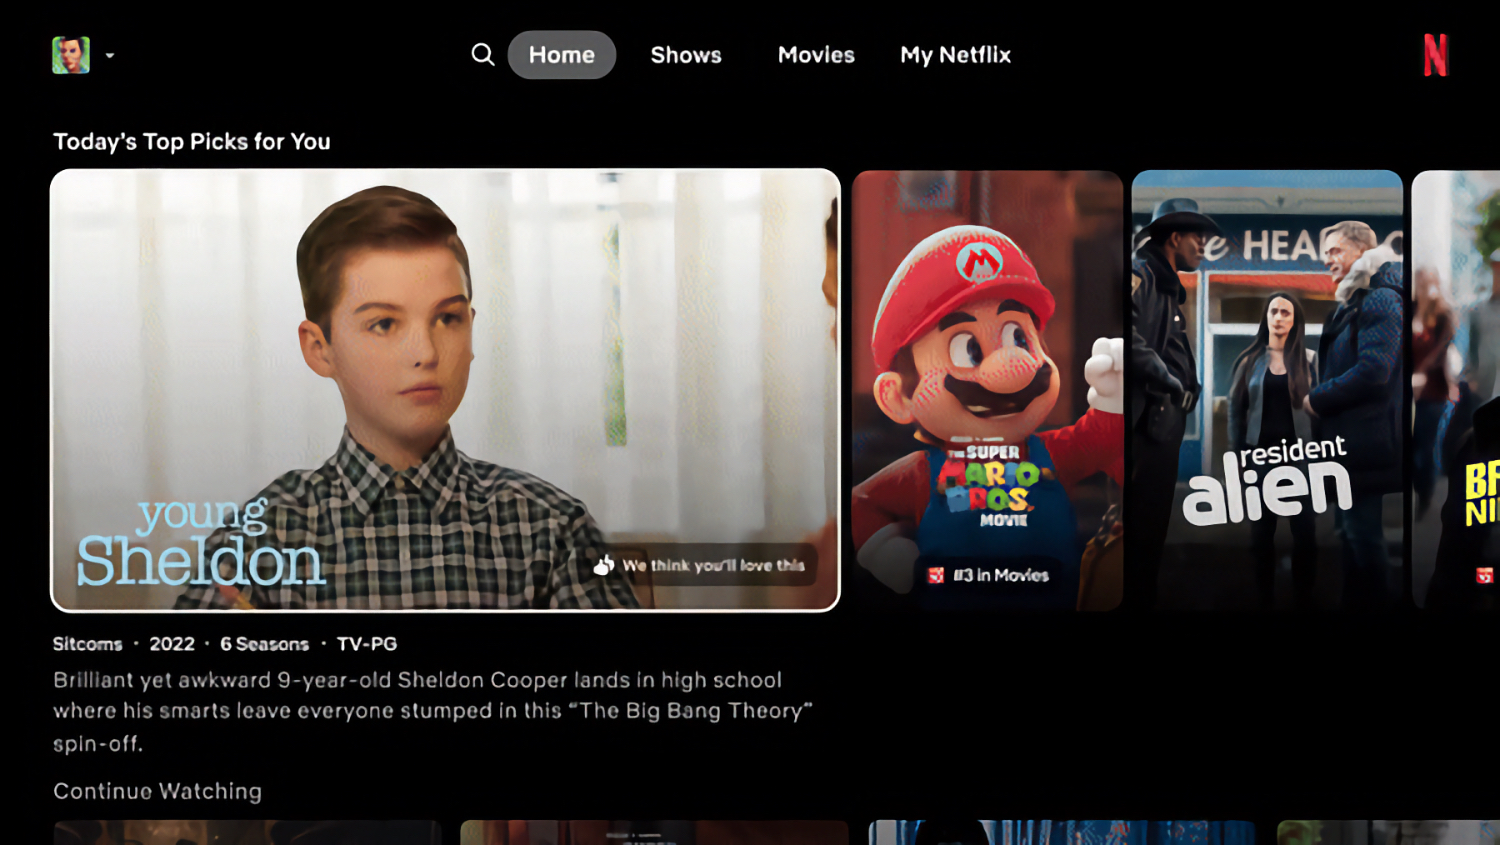 Netflix App Interface 3